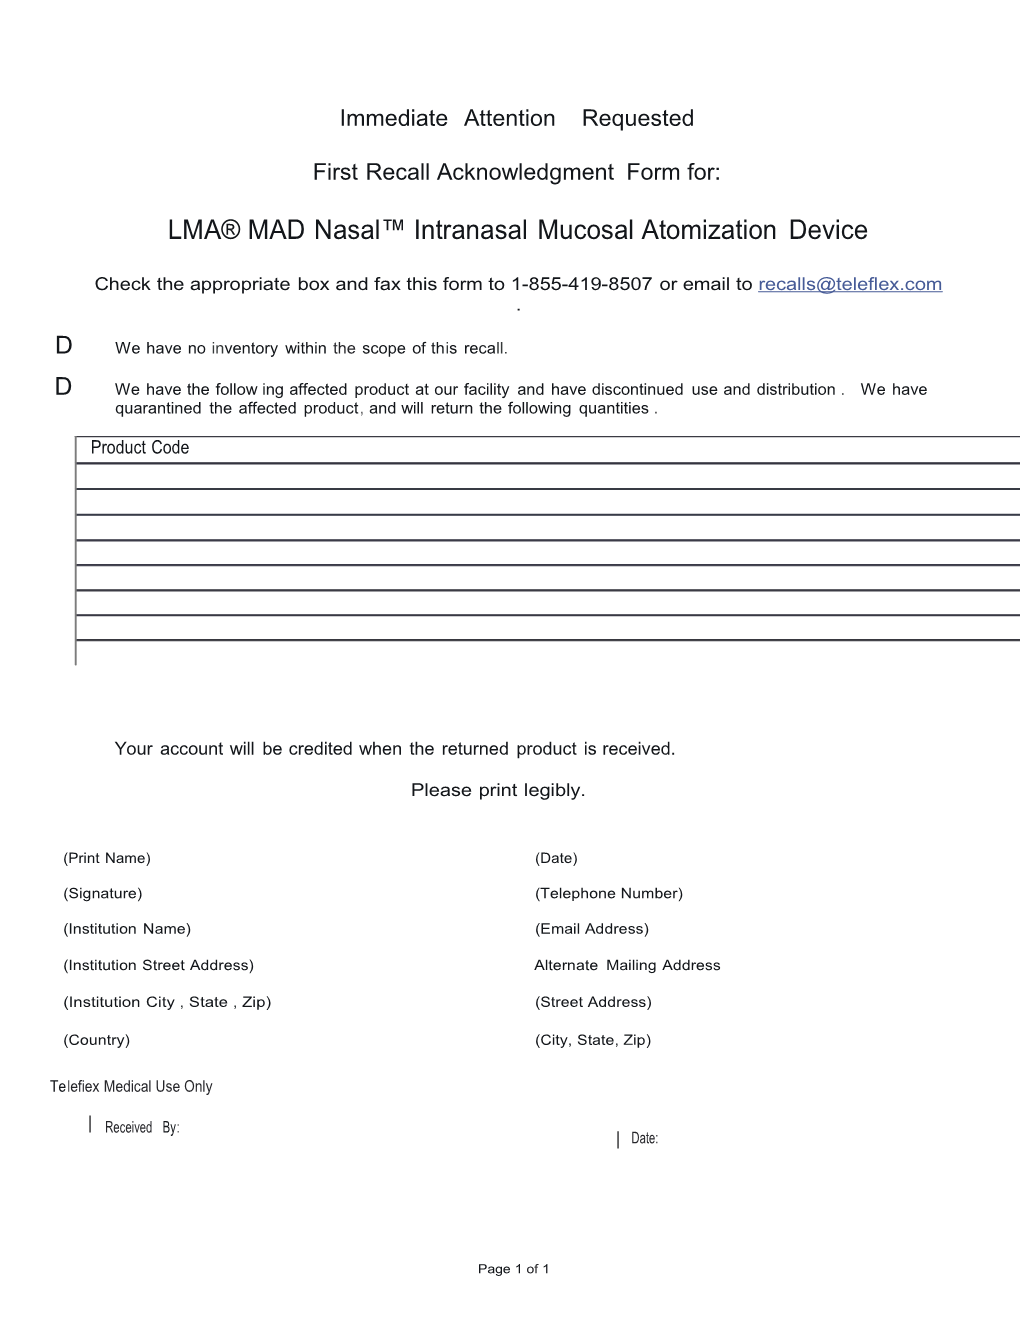 LMA Madnasal Intranasalmucosalatomization Device